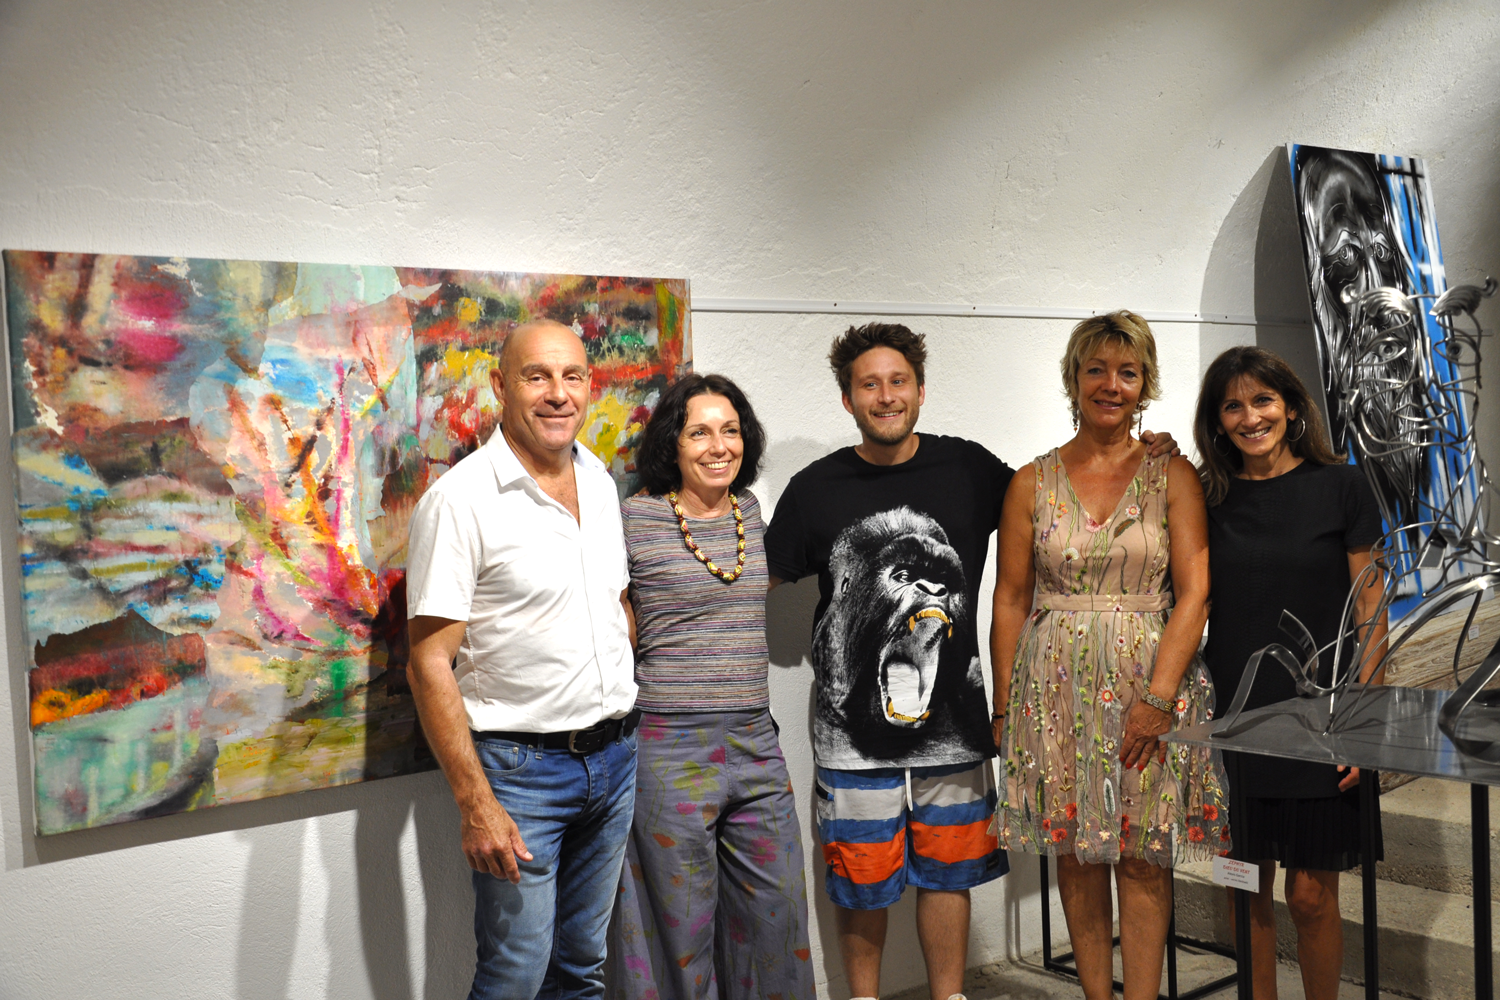 Le maire François Arizzi et son épouse Violaine, Cathy Casellato maire adjoint déléguée à la culture aux côtés des artistes